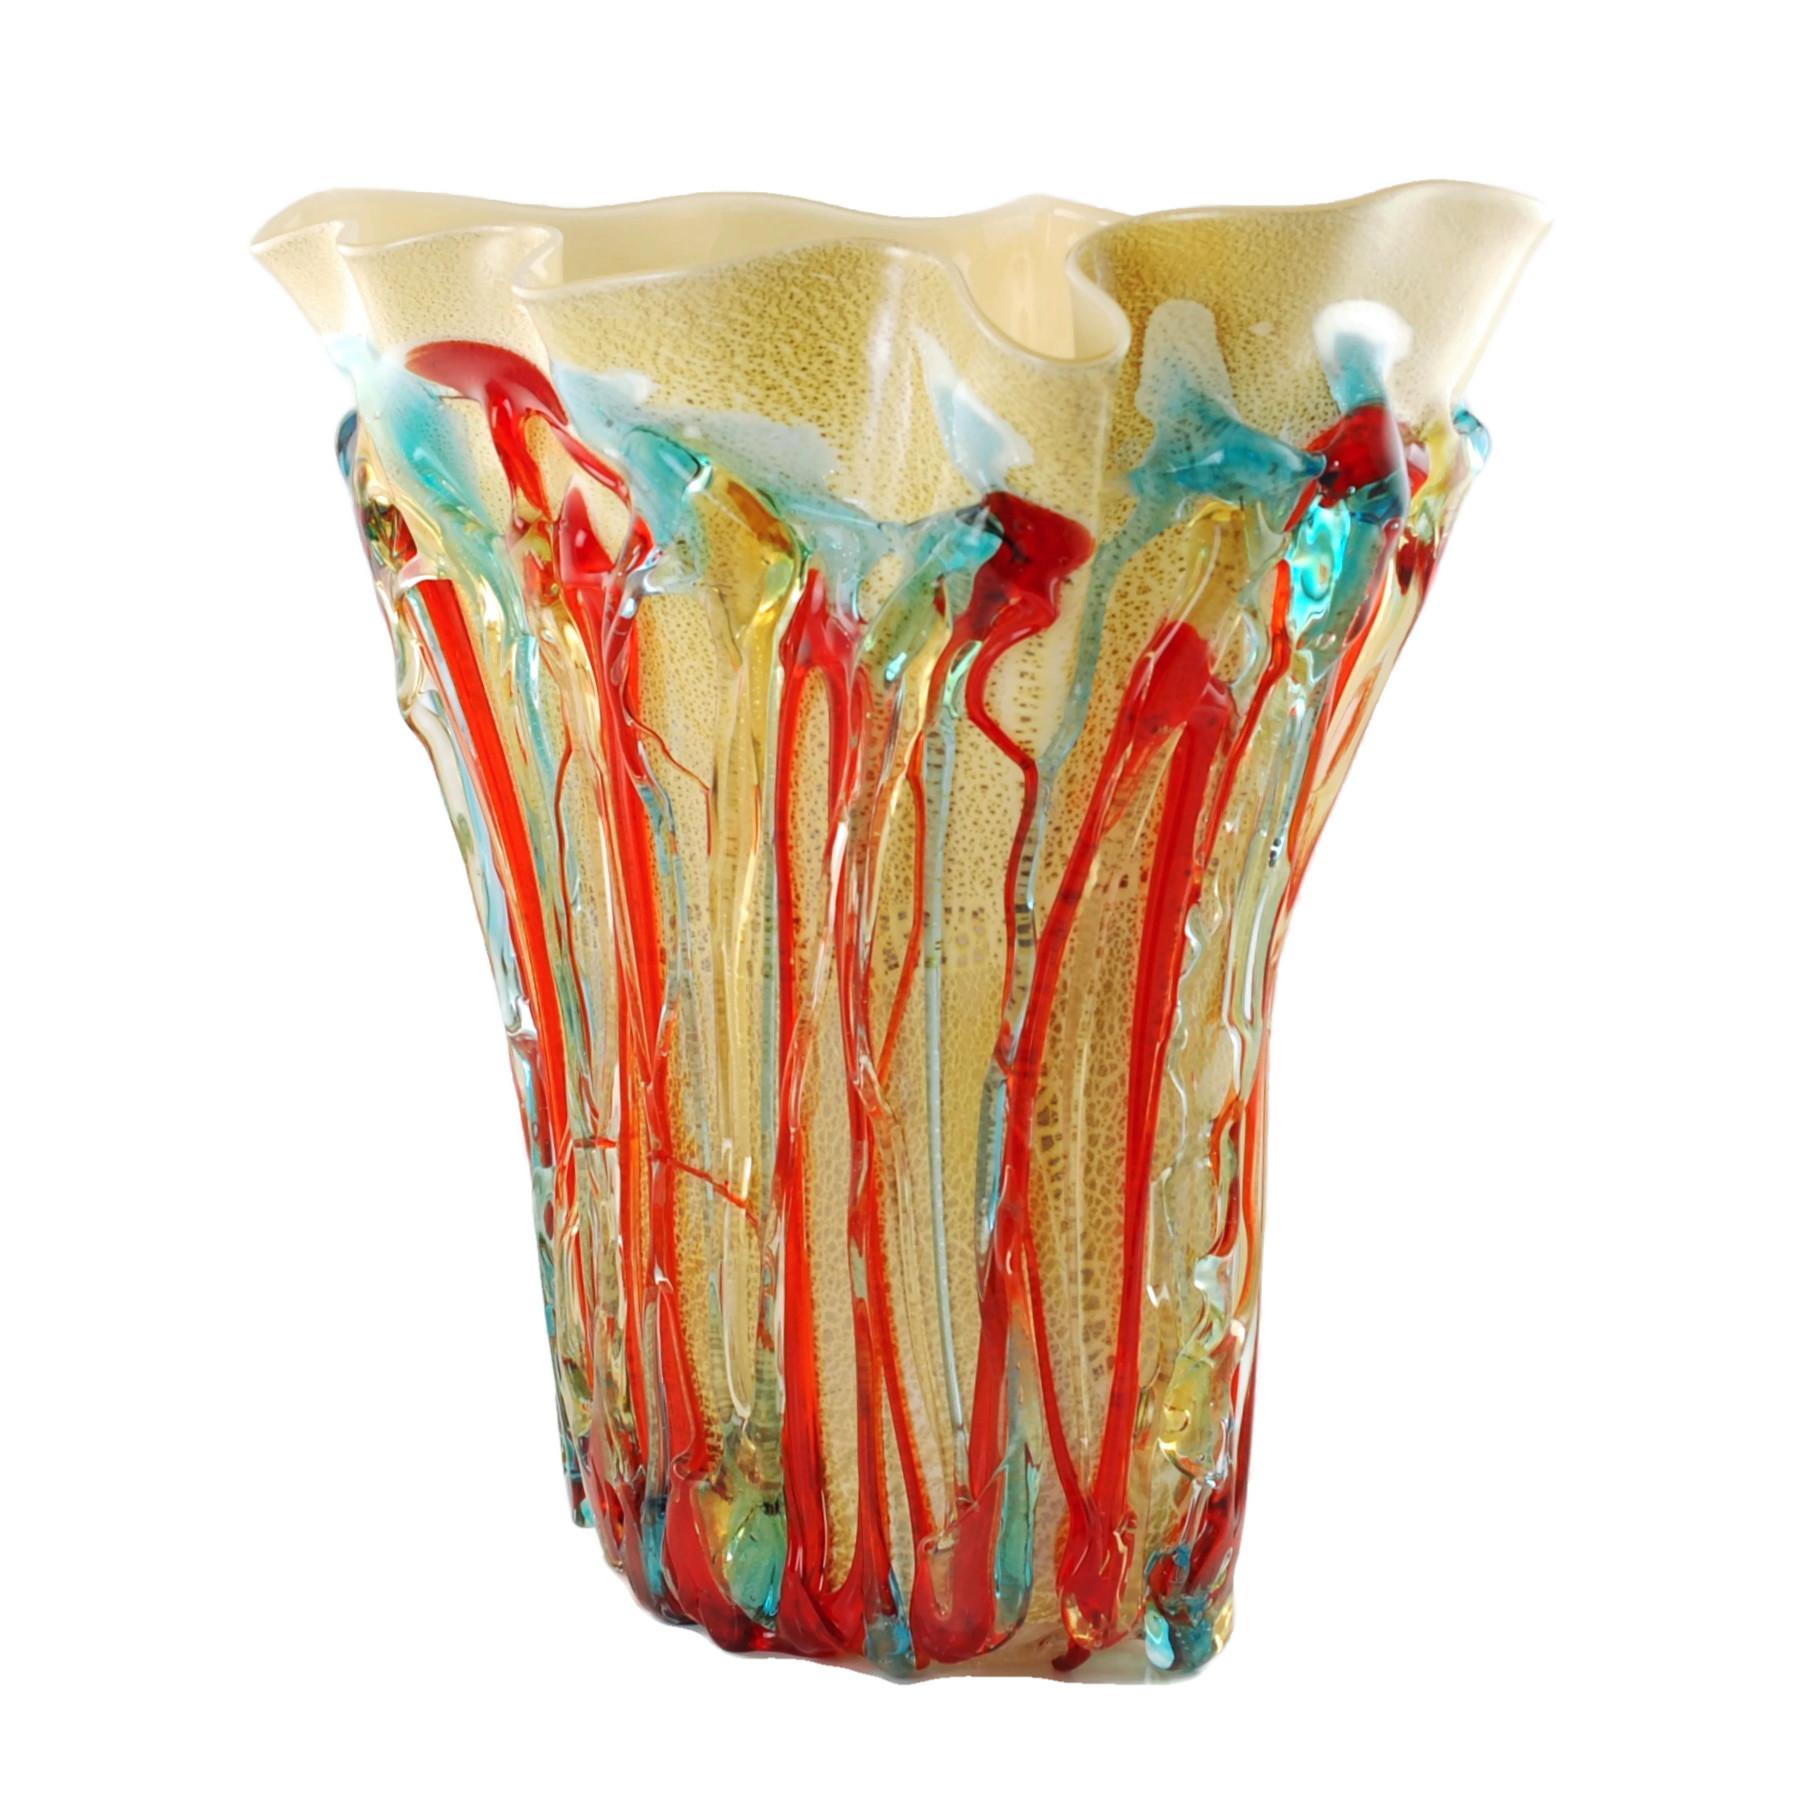 Ce vase de 16,5 pouces de haut en verre d'art de Murano soufflé à la main a été fabriqué par le maître verrier italien Enrico Cammozzo (né en 1965). Le corps du vase a été fini à la feuille d'or et présente d'épais cordons de verre rouge, bleu et